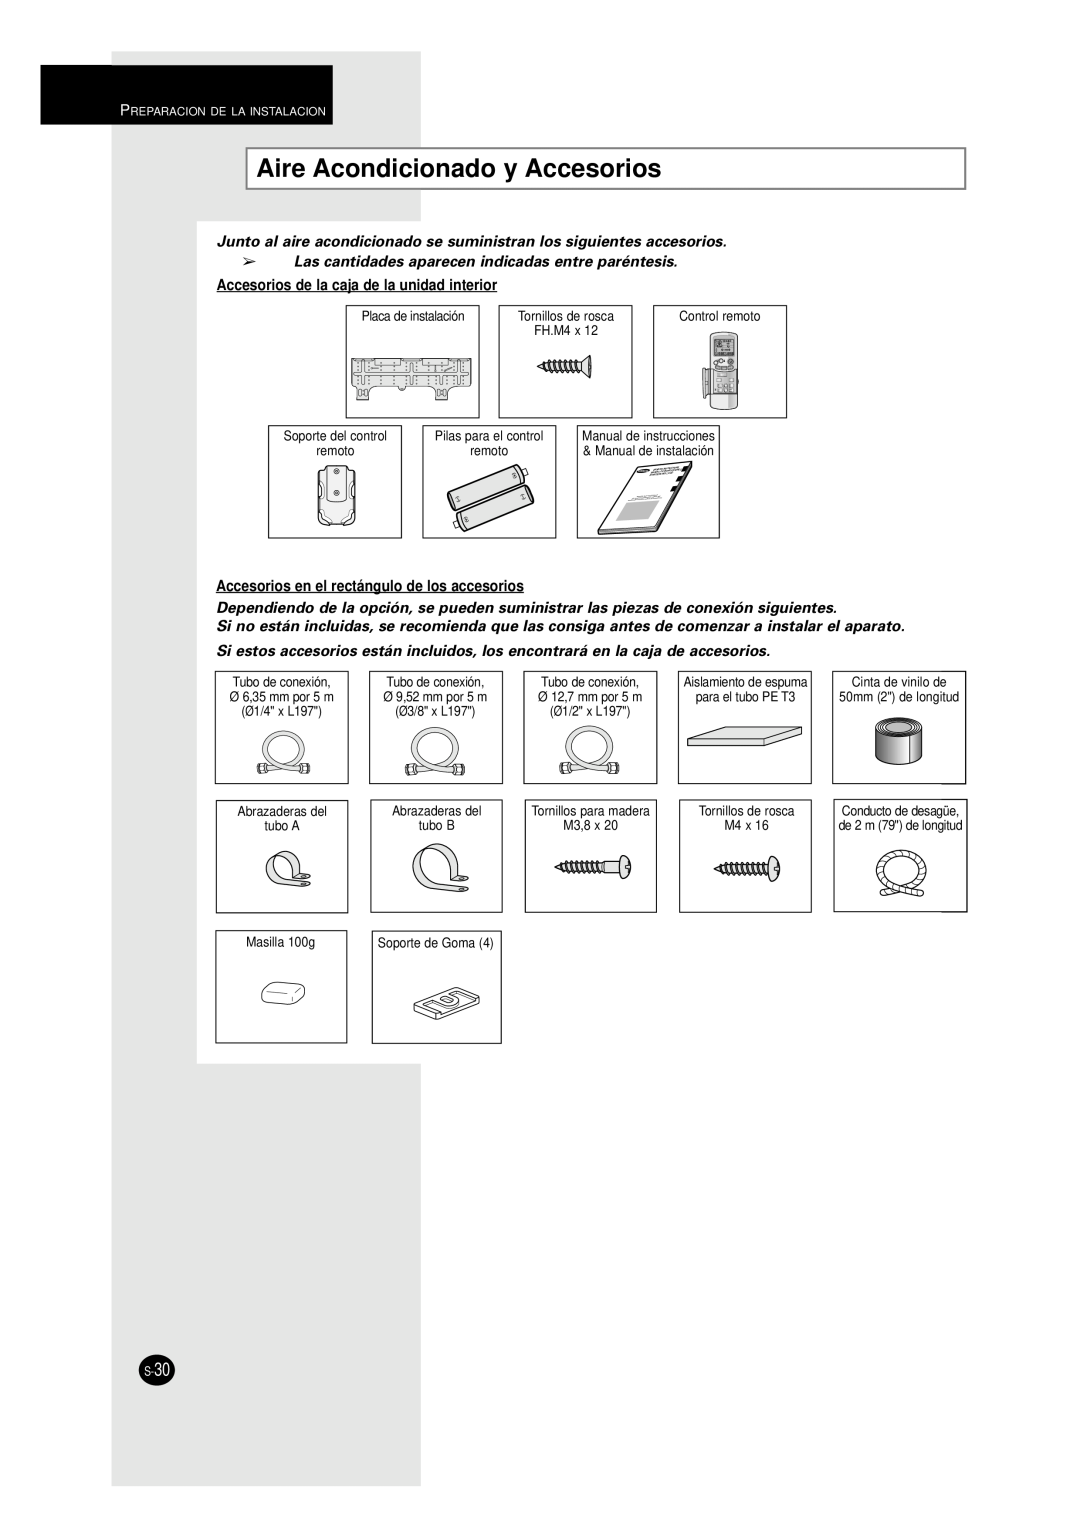 Samsung UM18A1C2, UM27A1C3, UM26A1C2, AM27A1C13 Aire Acondicionado y Accesorios, Accesorios de la caja de la unidad interior 